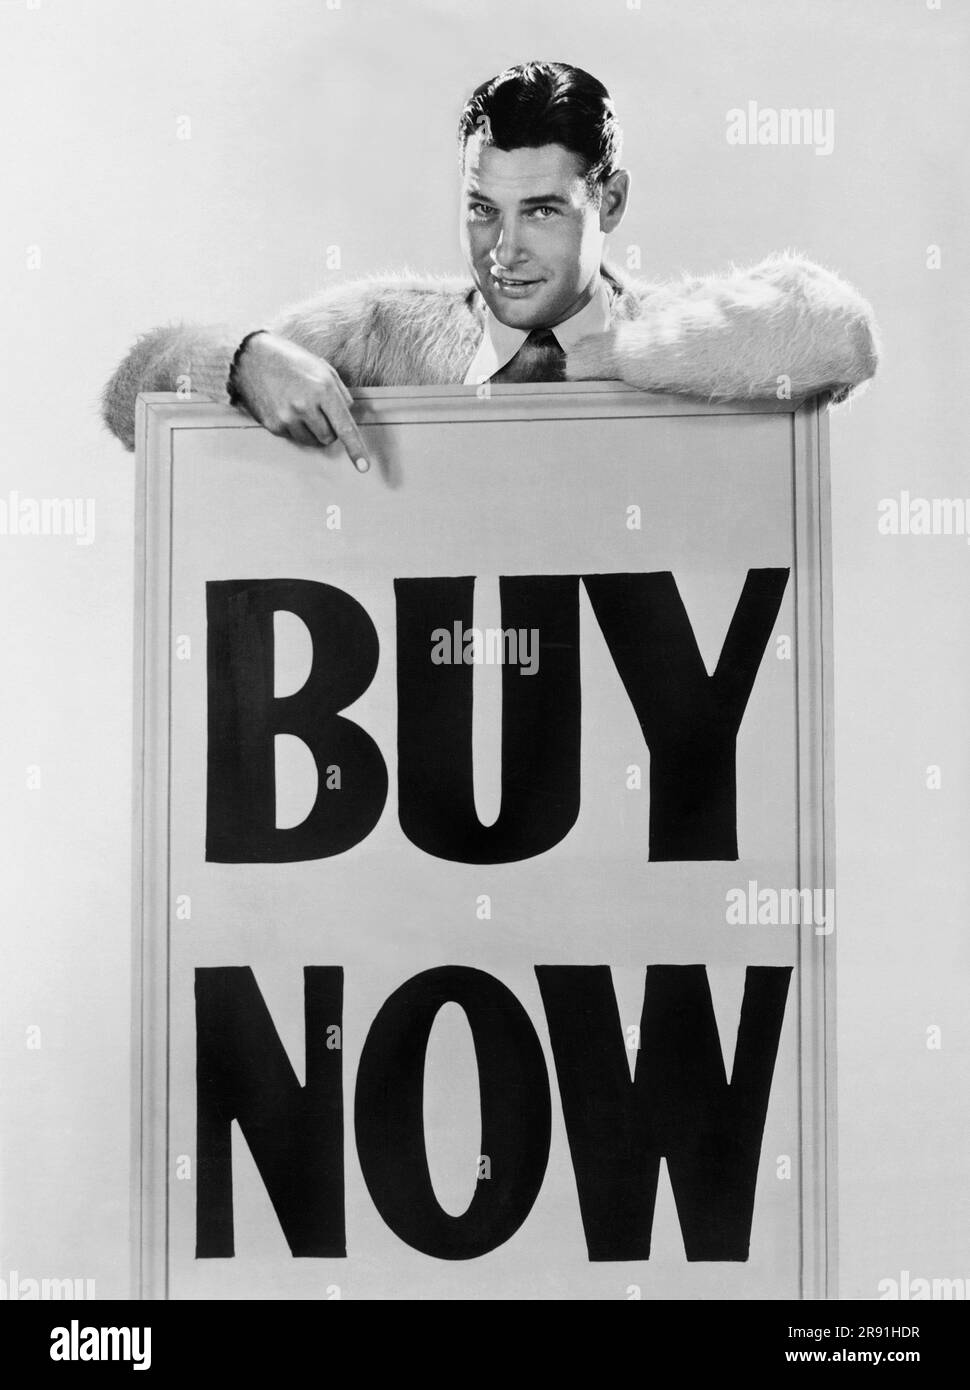 Hollywood, Kalifornien: c. 1930 Schauspieler Richard Arlen glaubt, dass, wenn das Geld im Umlauf bleibt, der Wohlstand in das Land zurückkehren wird. Sein Slogan für Good Times ist "Jetzt kaufen". Stockfoto